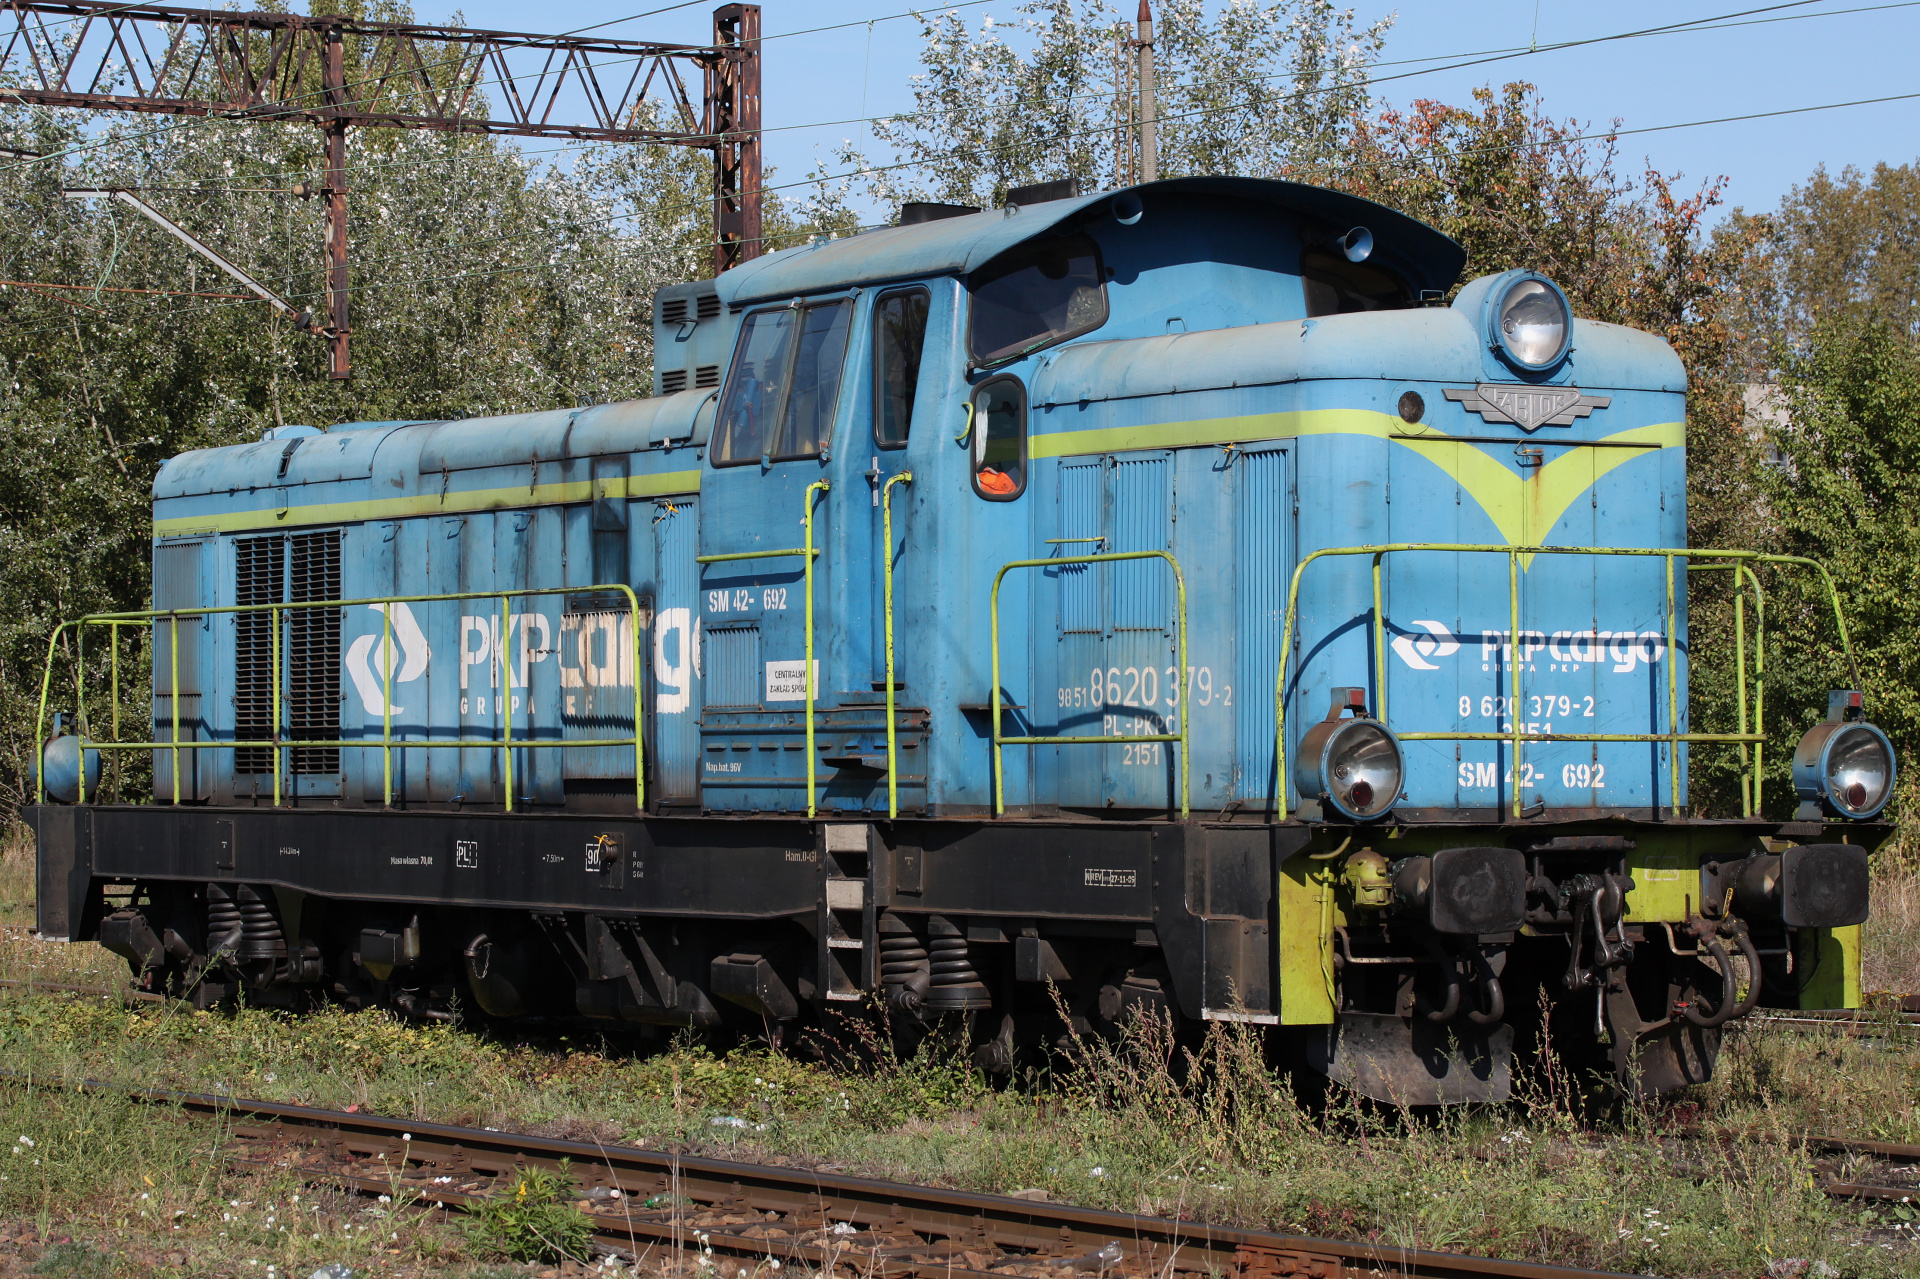 SM42-692 (Vehicles » Trains and Locomotives » Fablok 6D)